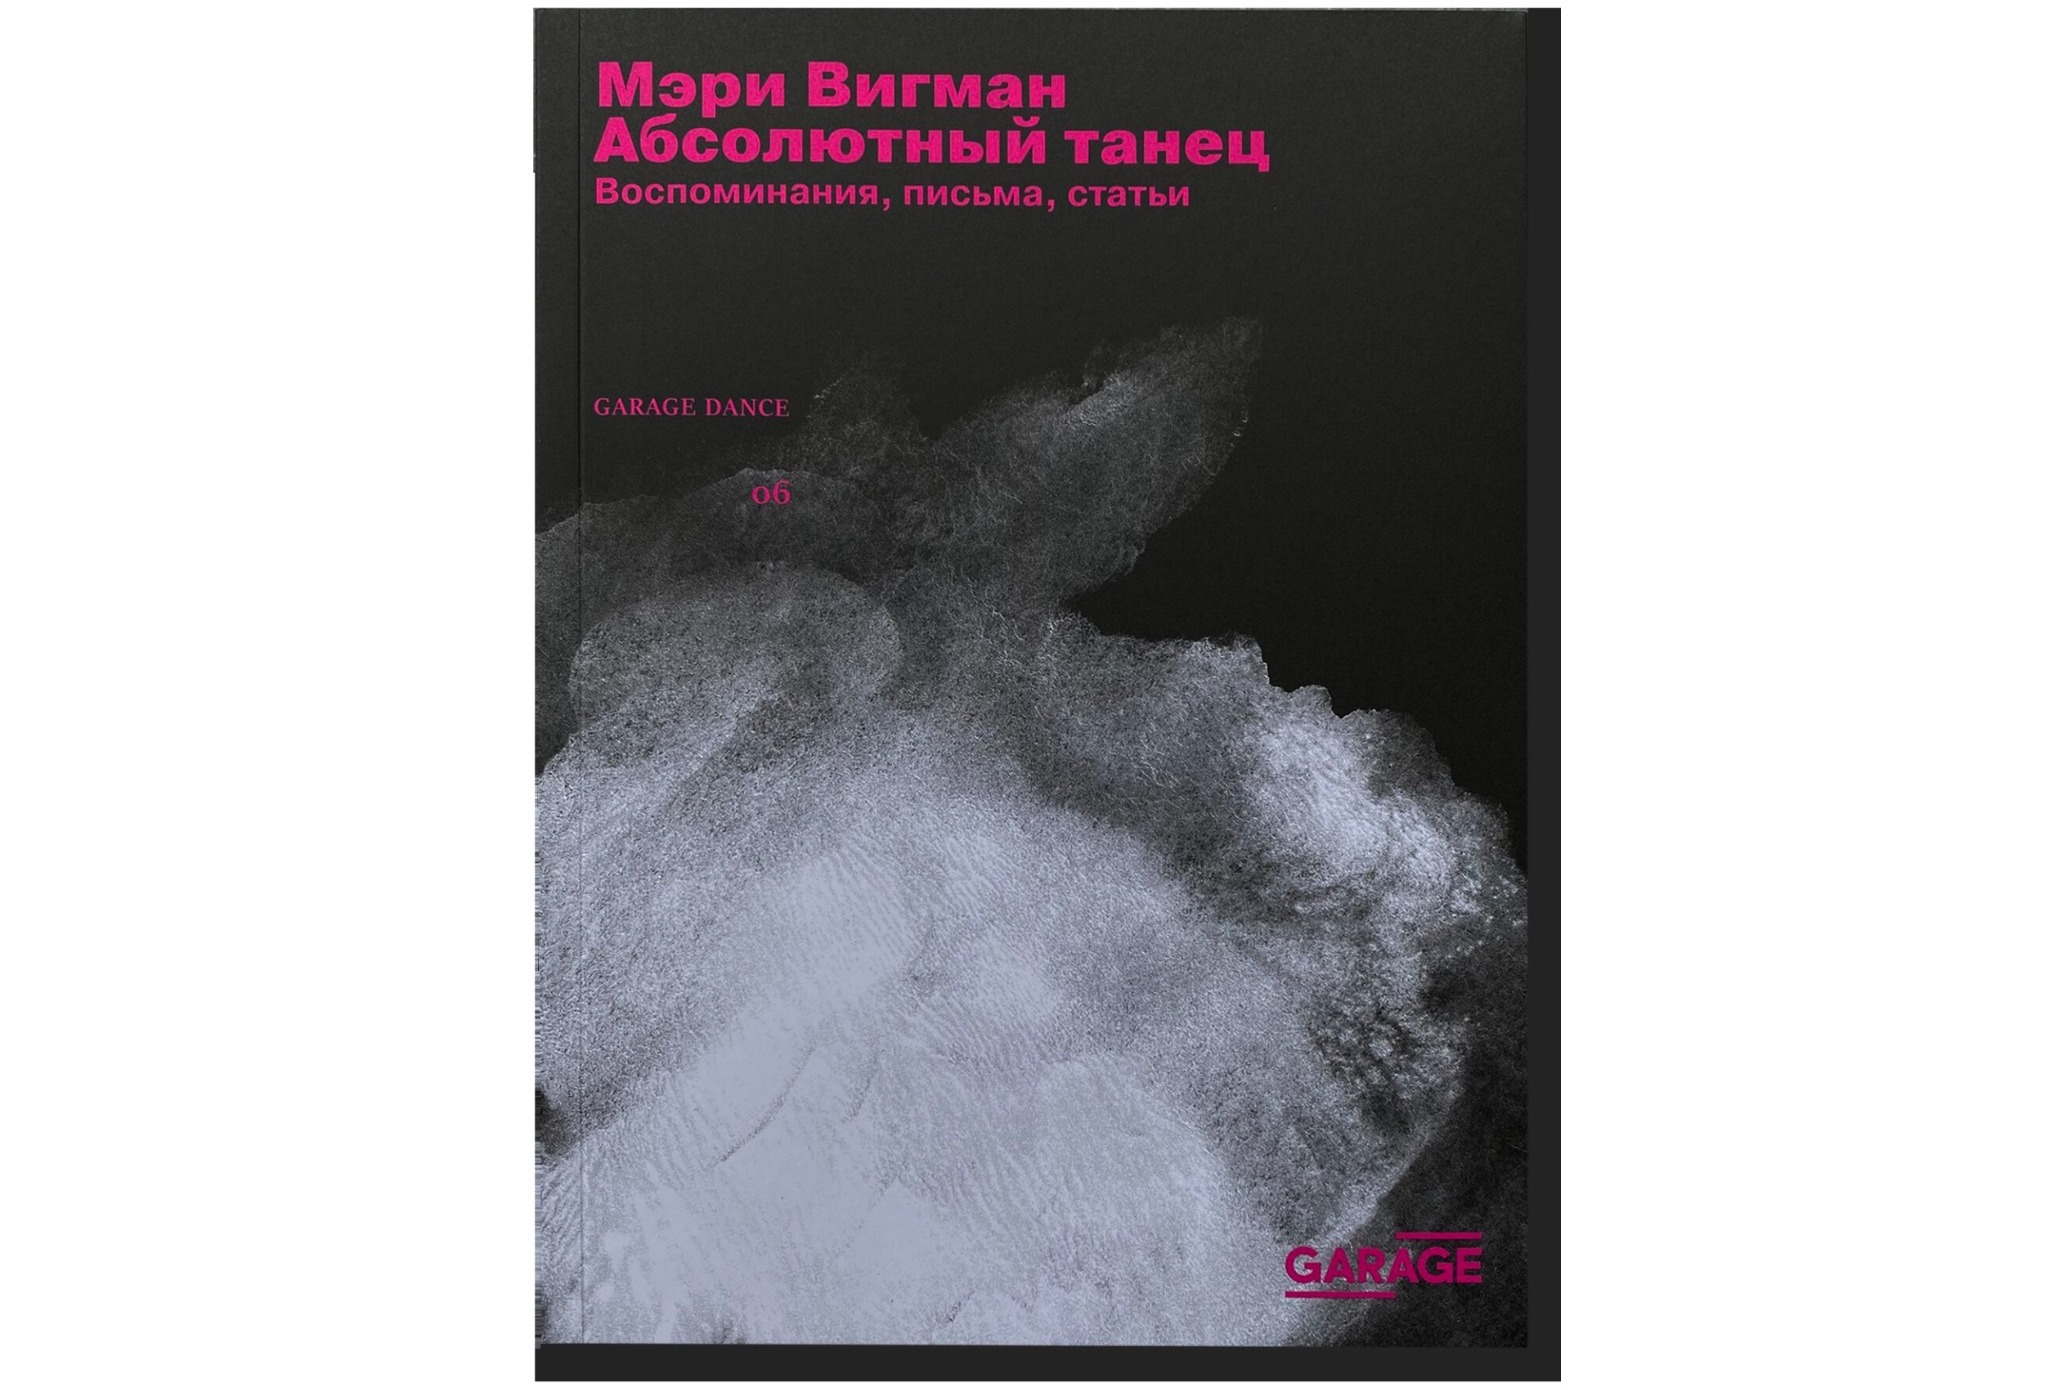 Обложка книги "Мэри Вигман: Абсолютный танец. Воспоминания, письма, статьи". Фото с сайта Музея "Гараж"